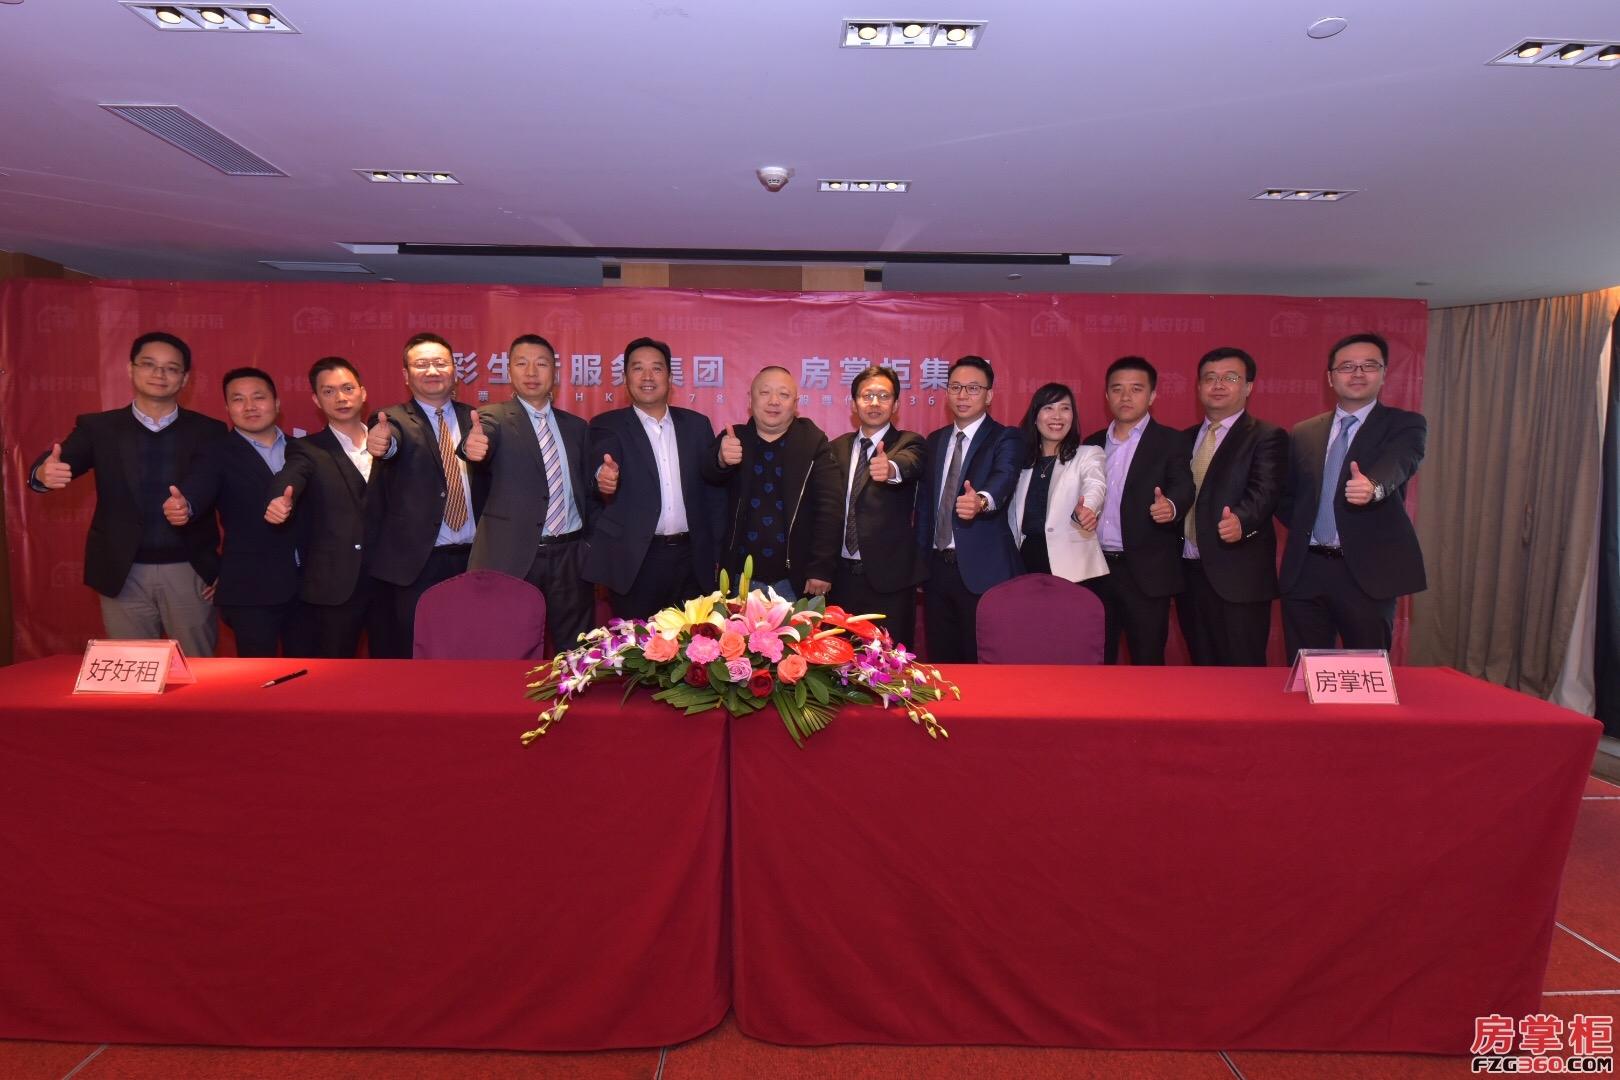 房掌柜集团(股票代码836918)在深圳皇庭v酒店举行了战略合作签约仪式